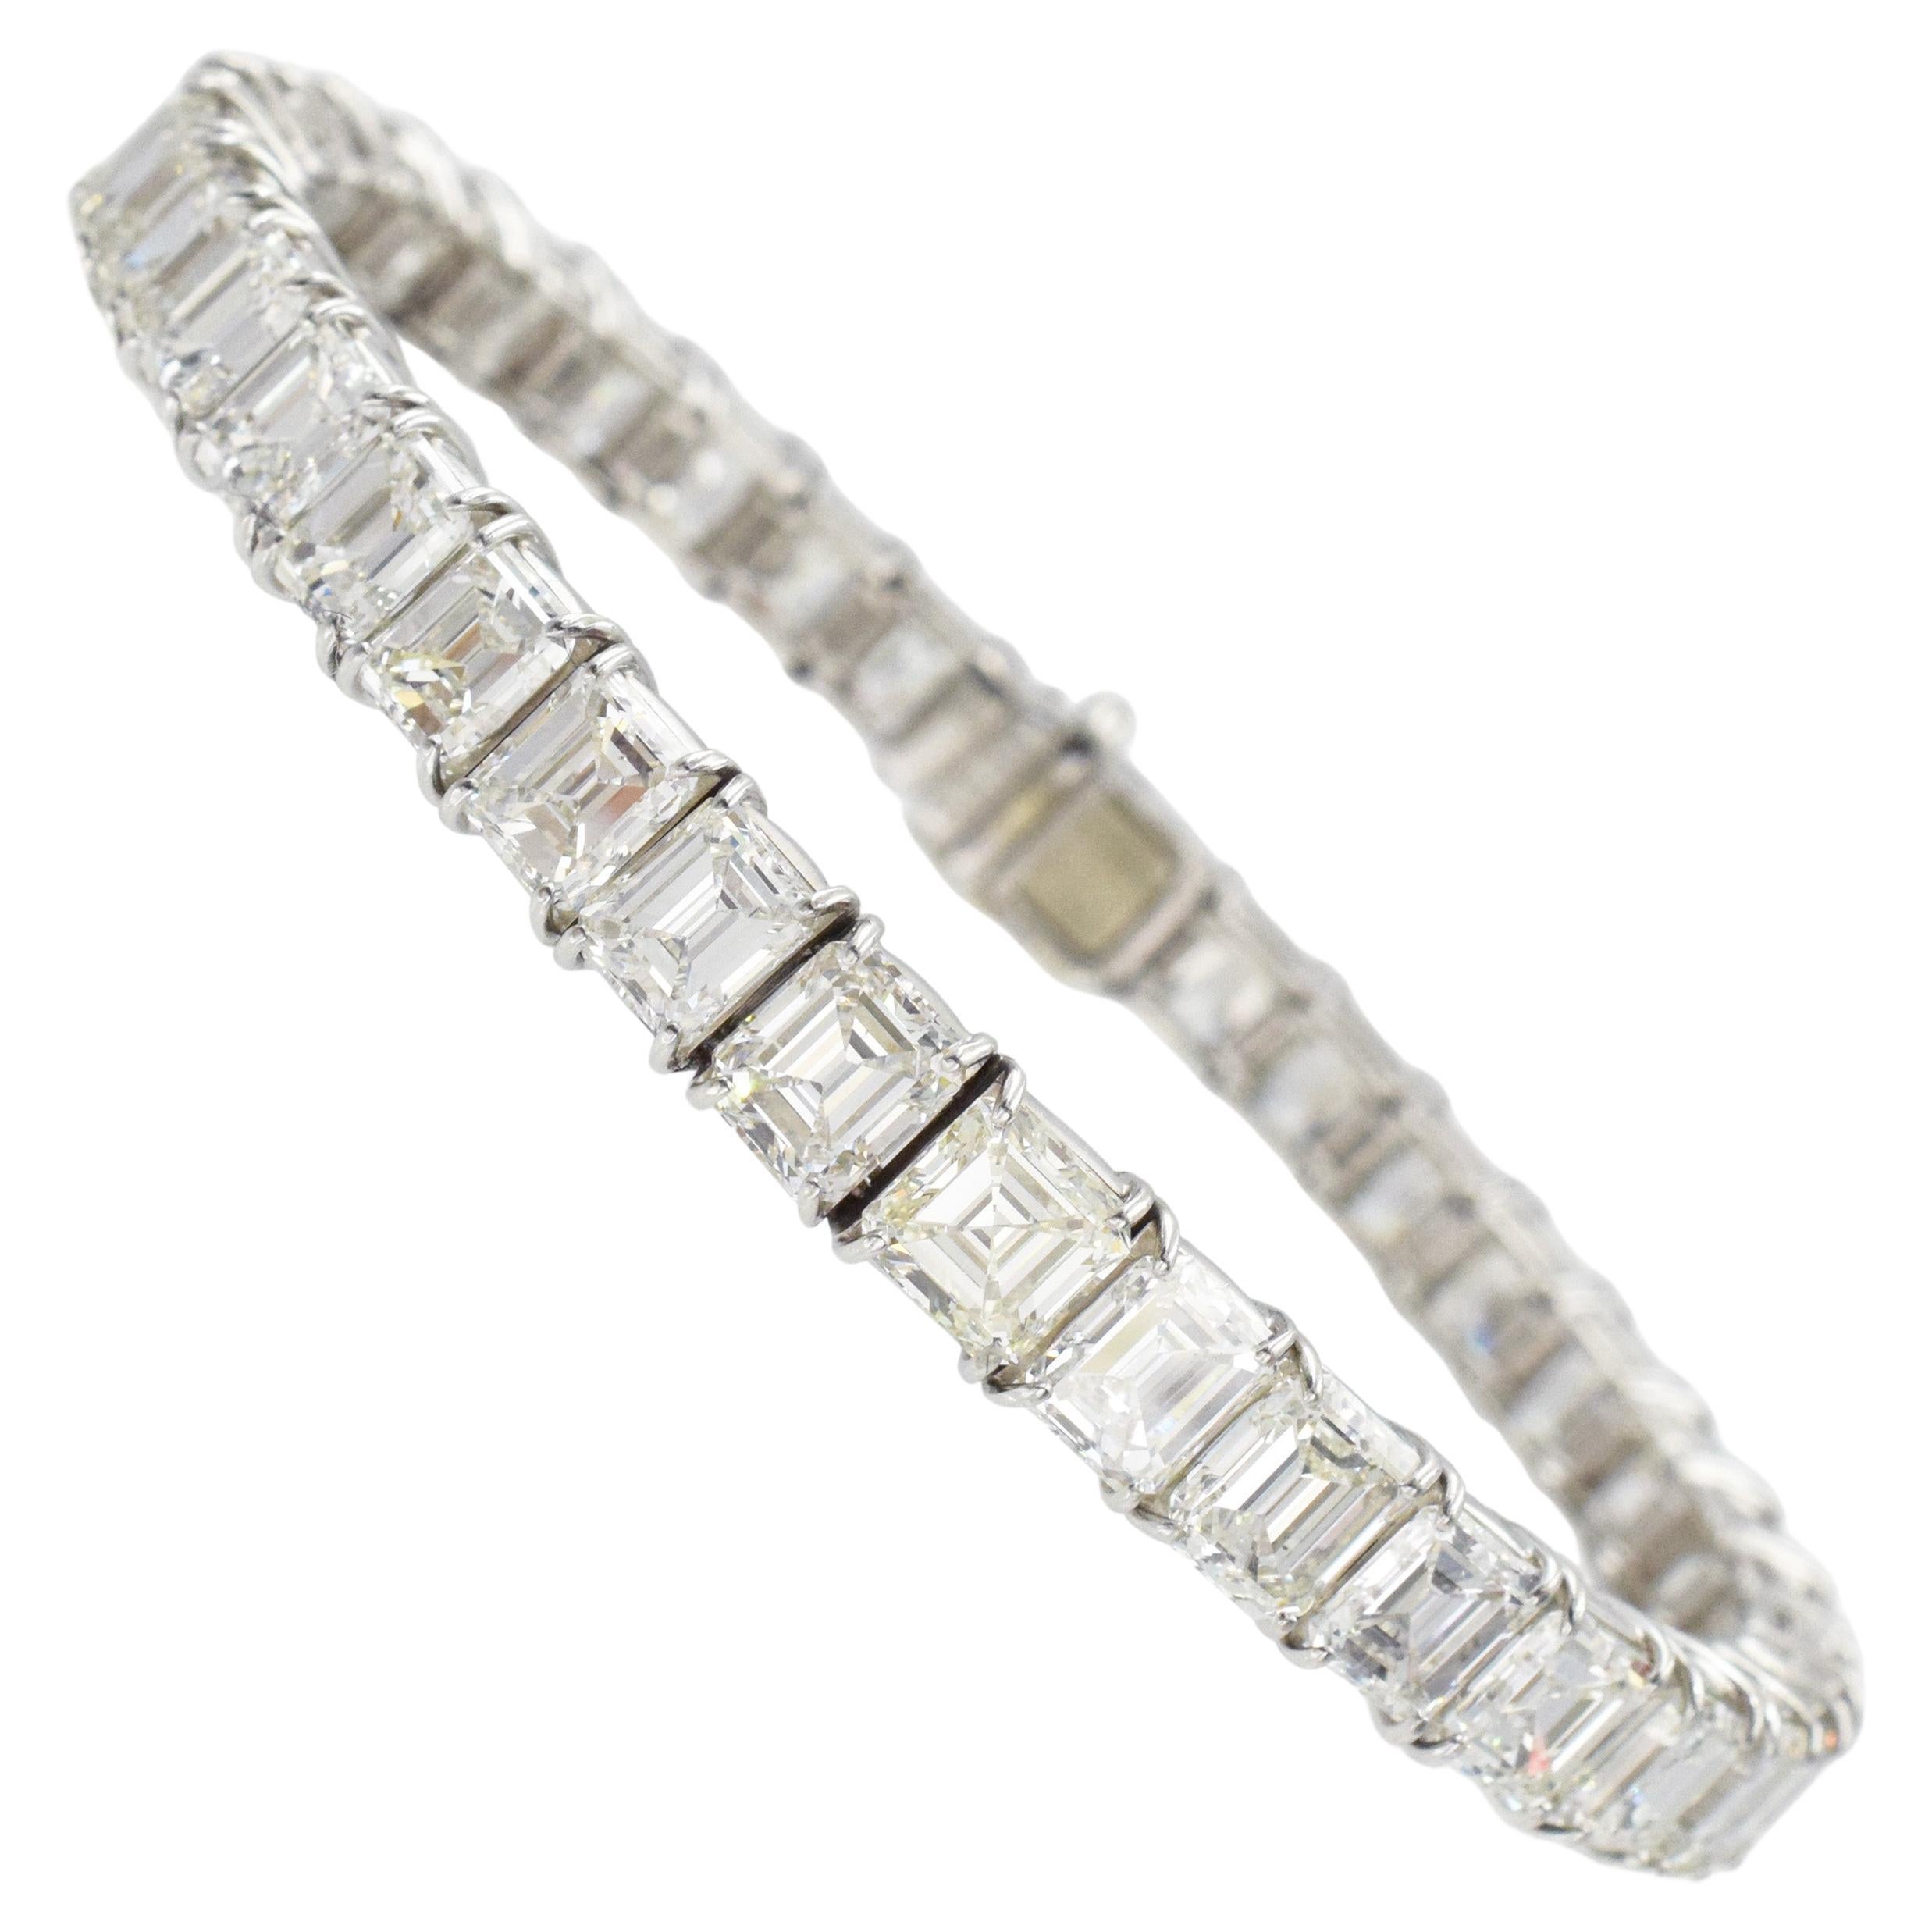 Harry Winston Emerald Cut Diamond Bracelet